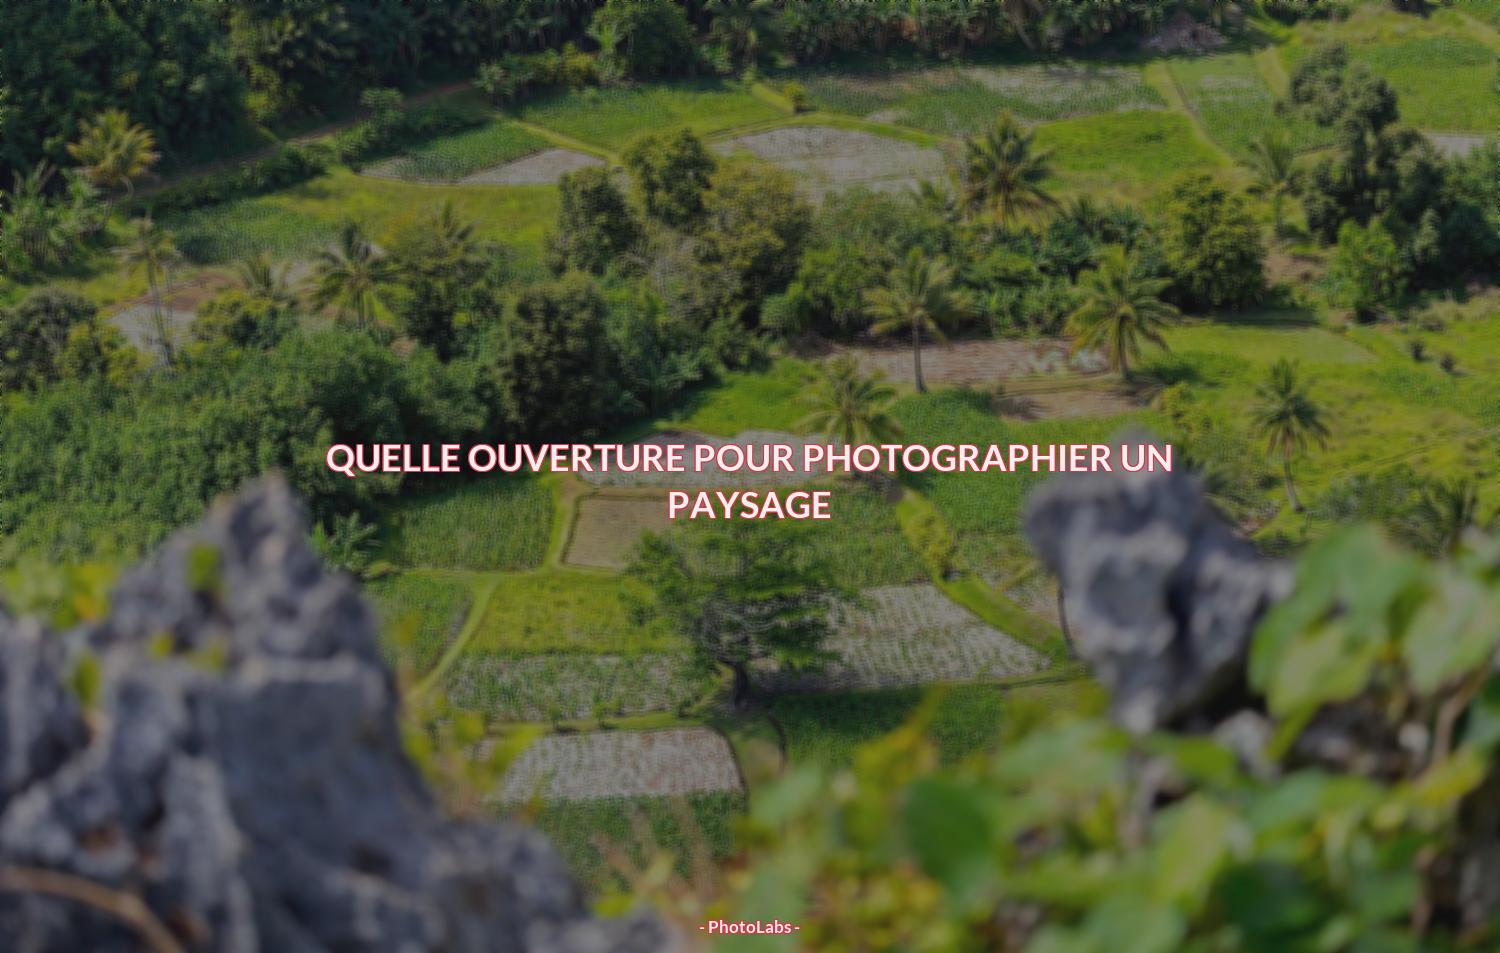 Quelle ouverture pour photographier un paysage ?